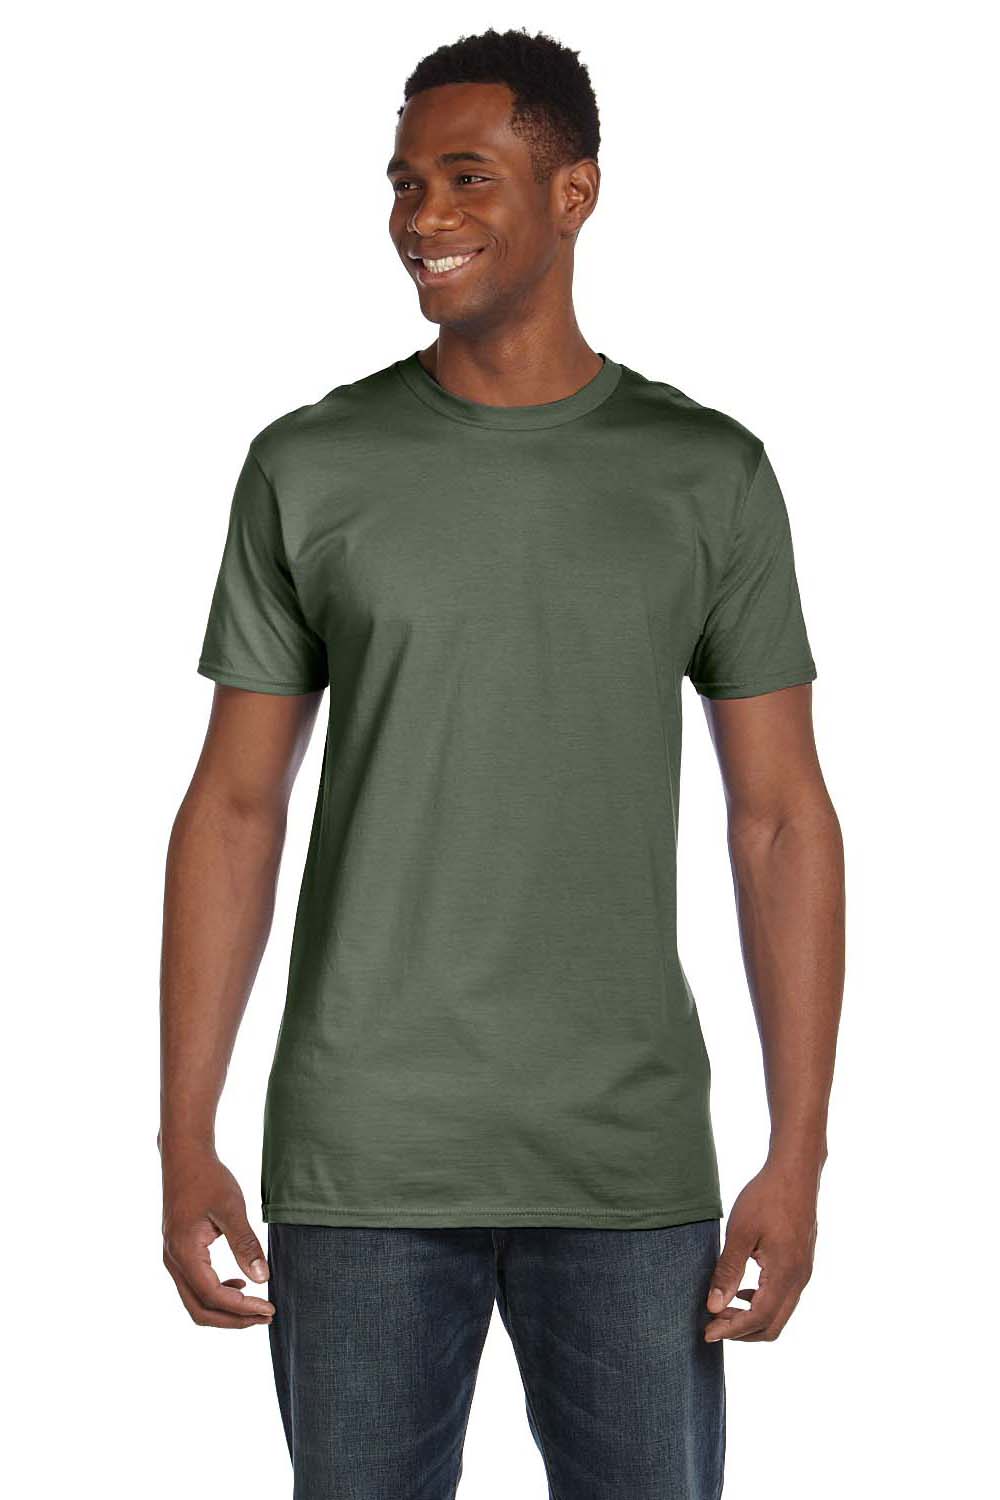 Hanes 4980 Mens Nano-T Short Sleeve Crewneck T-Shirt Fatigue Green Front